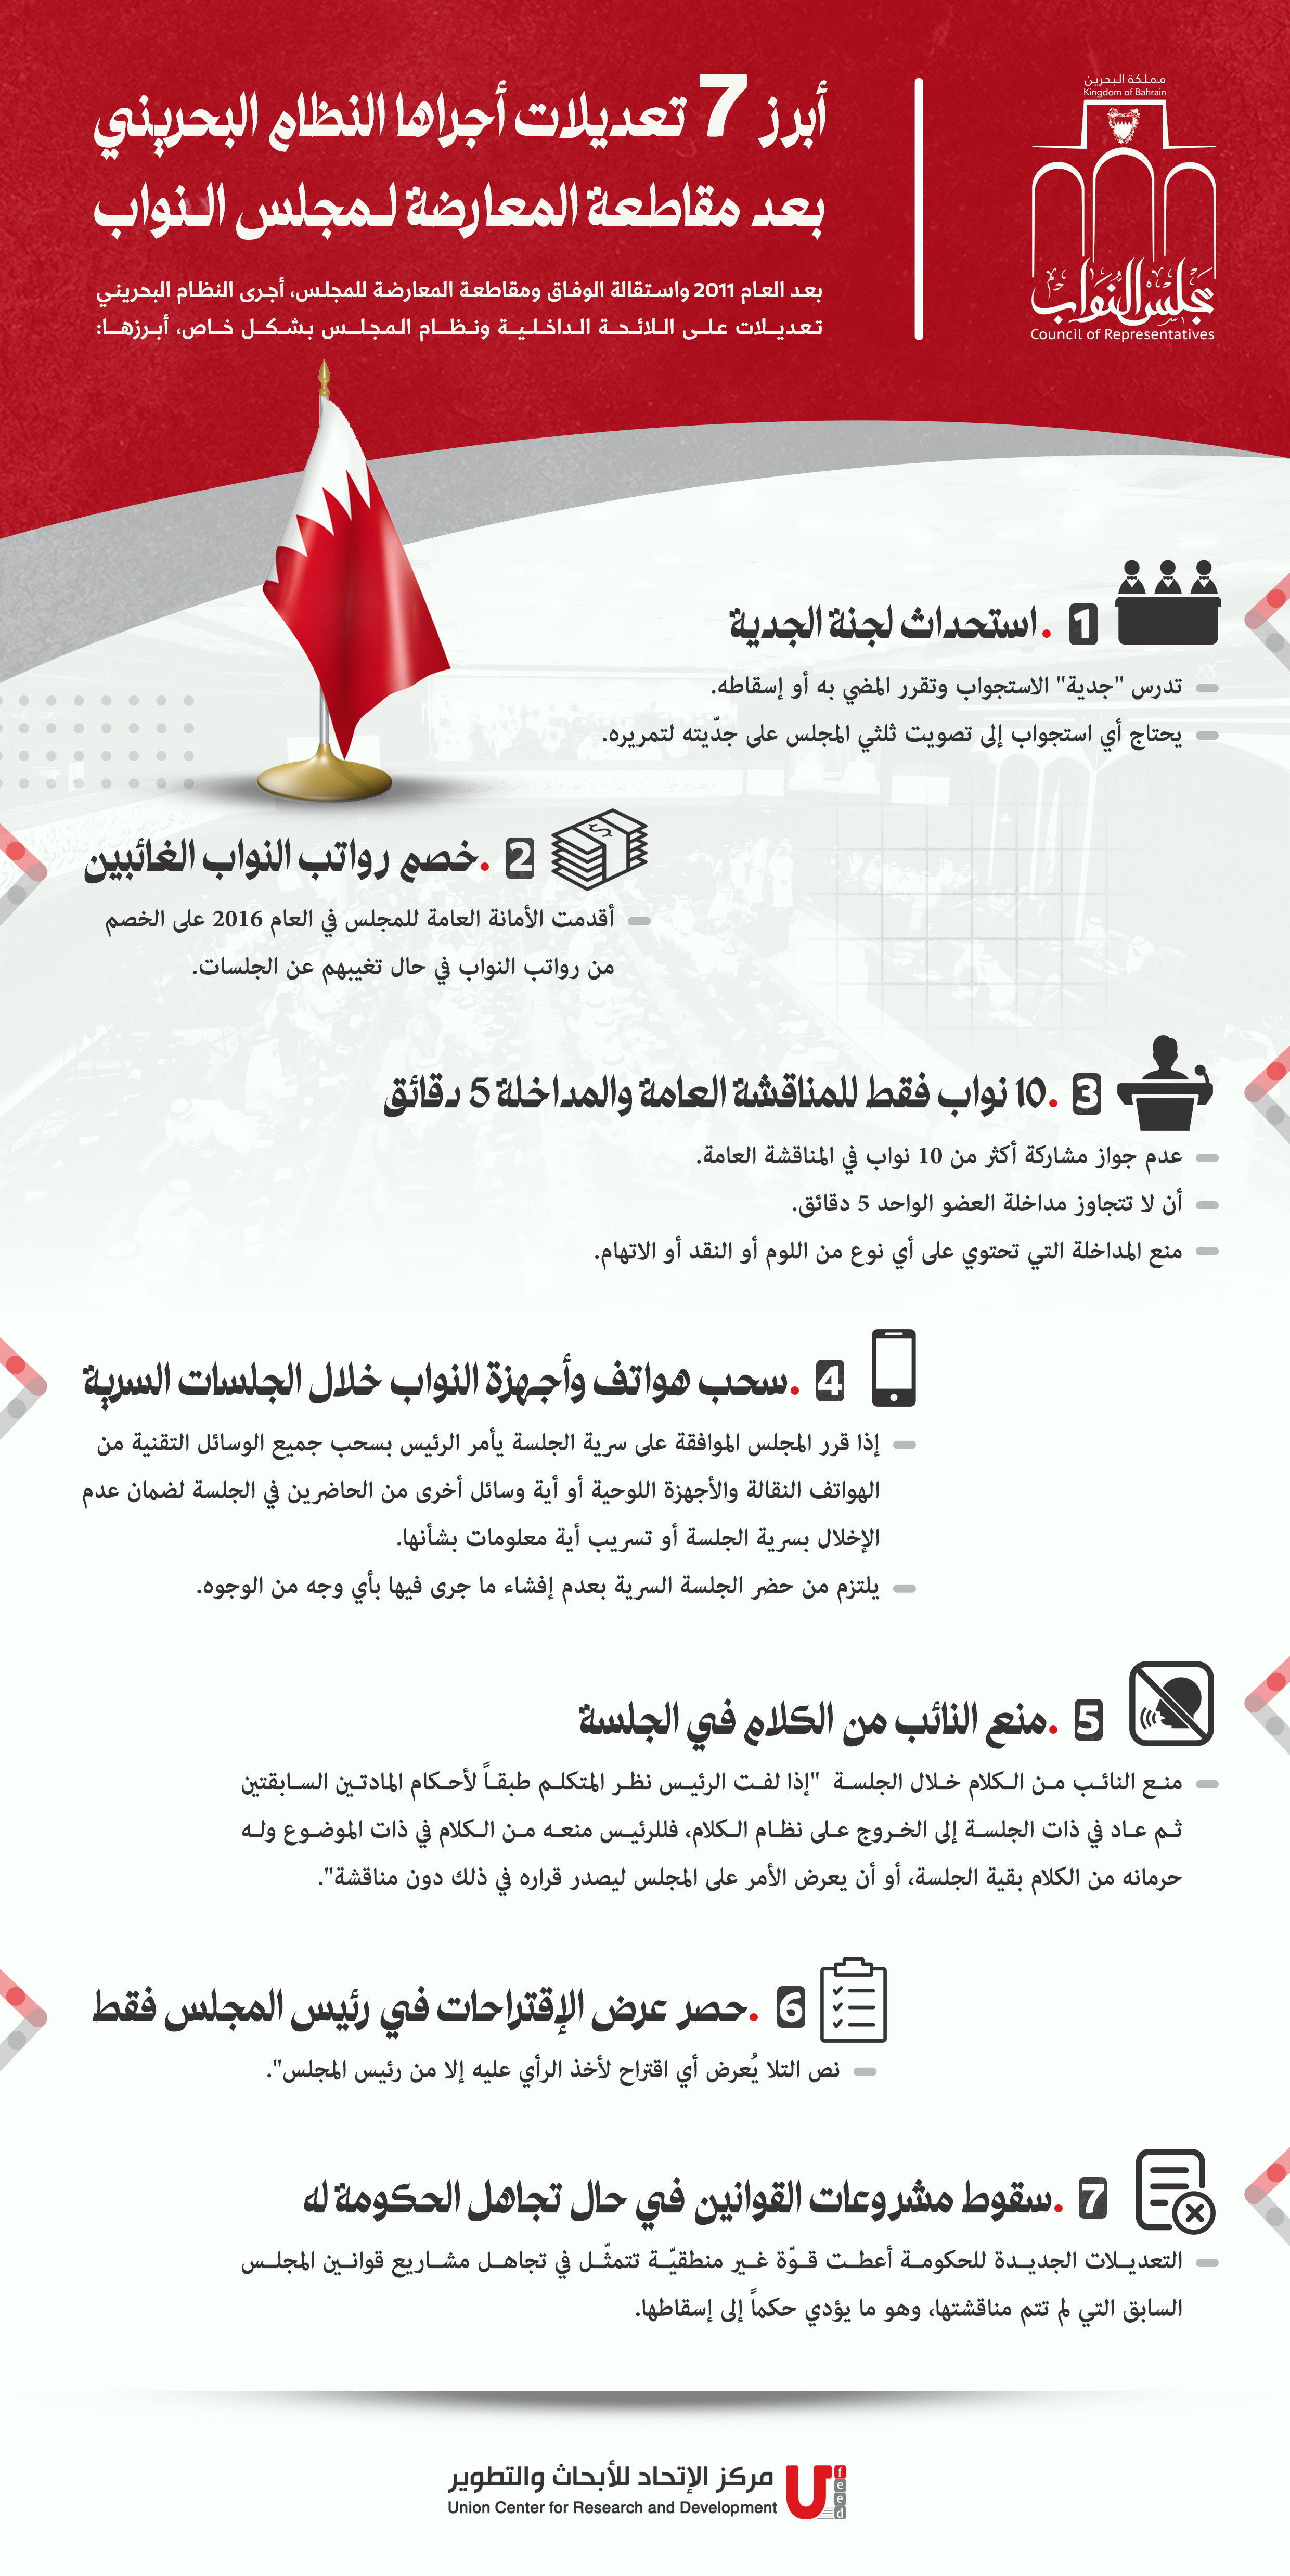 أبرز 7 تعديلات أجراها النظام البحريني بعد مقاطعة المعارضة لمجلس النواب